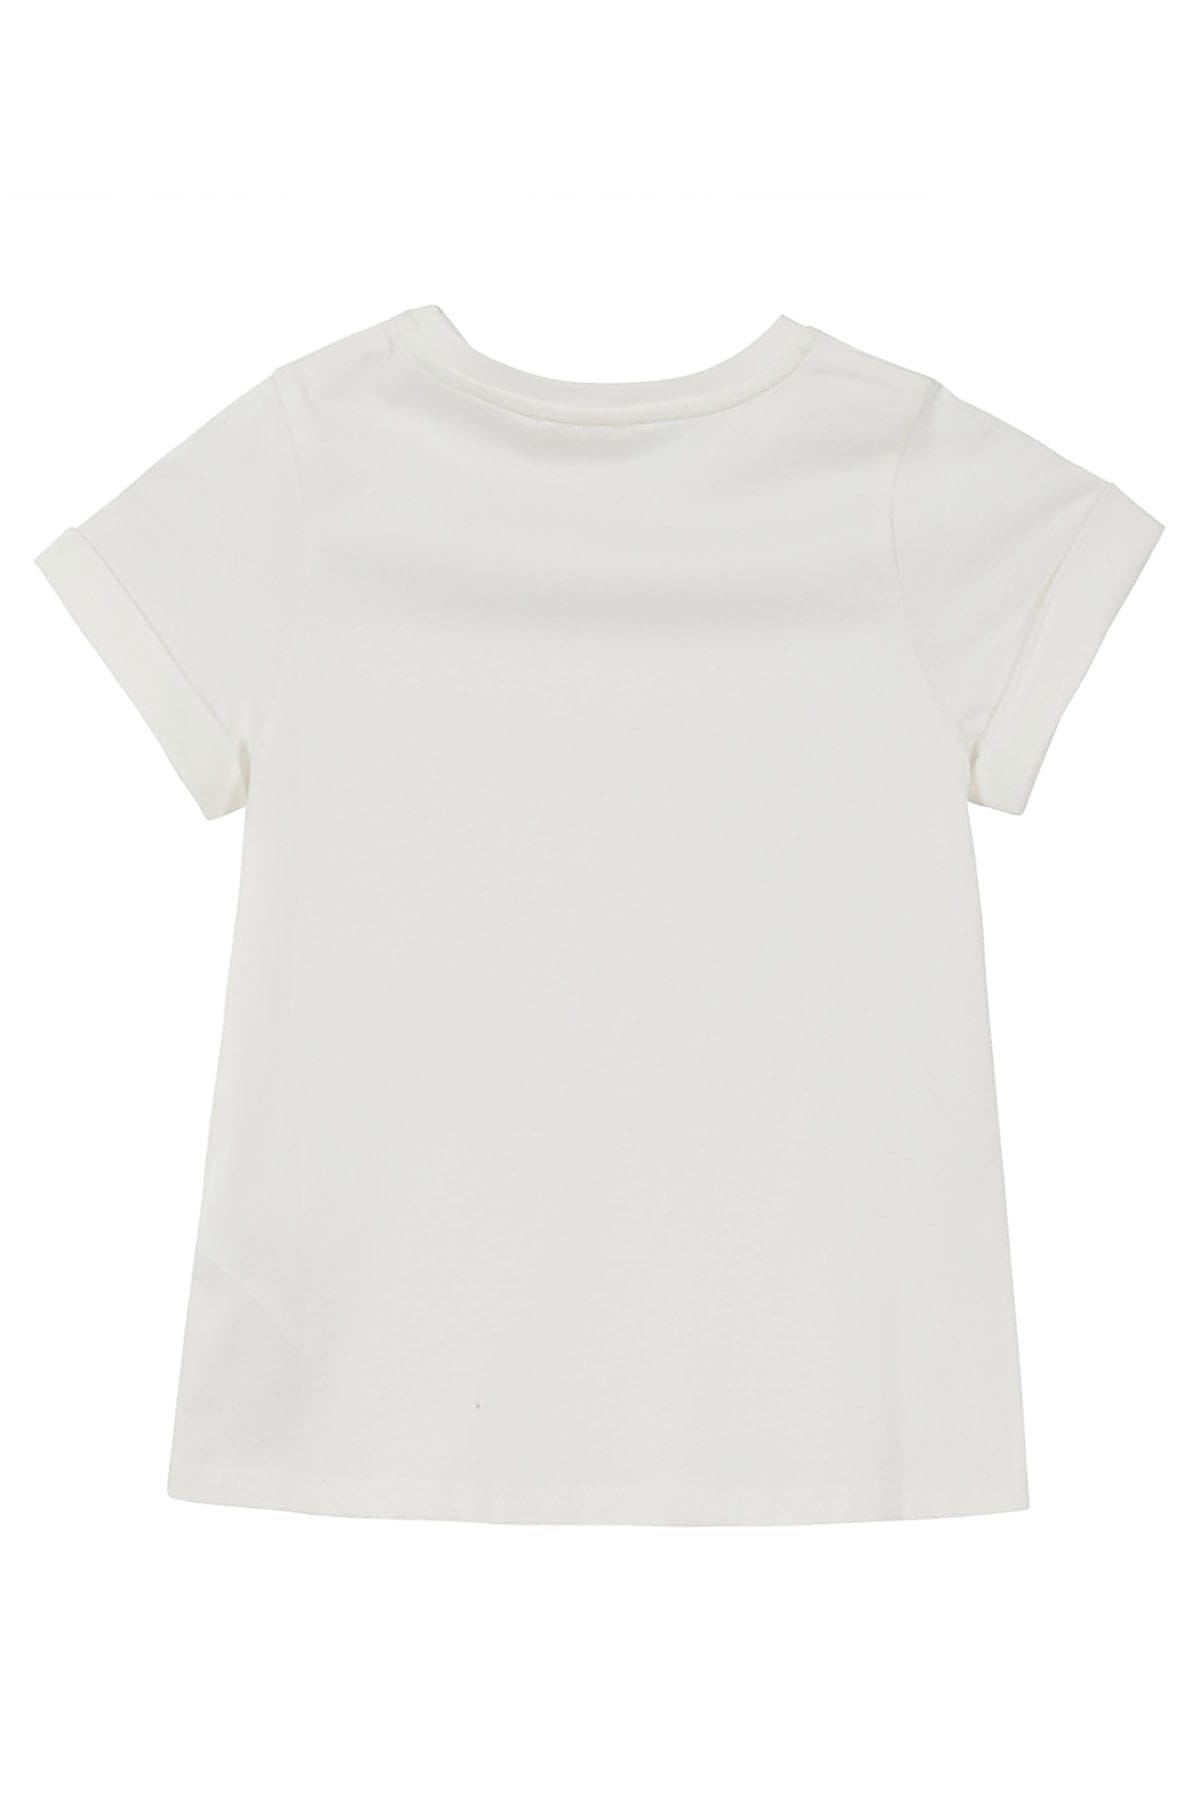 Shop Chloé Tee Shirt In Bianco Sporco